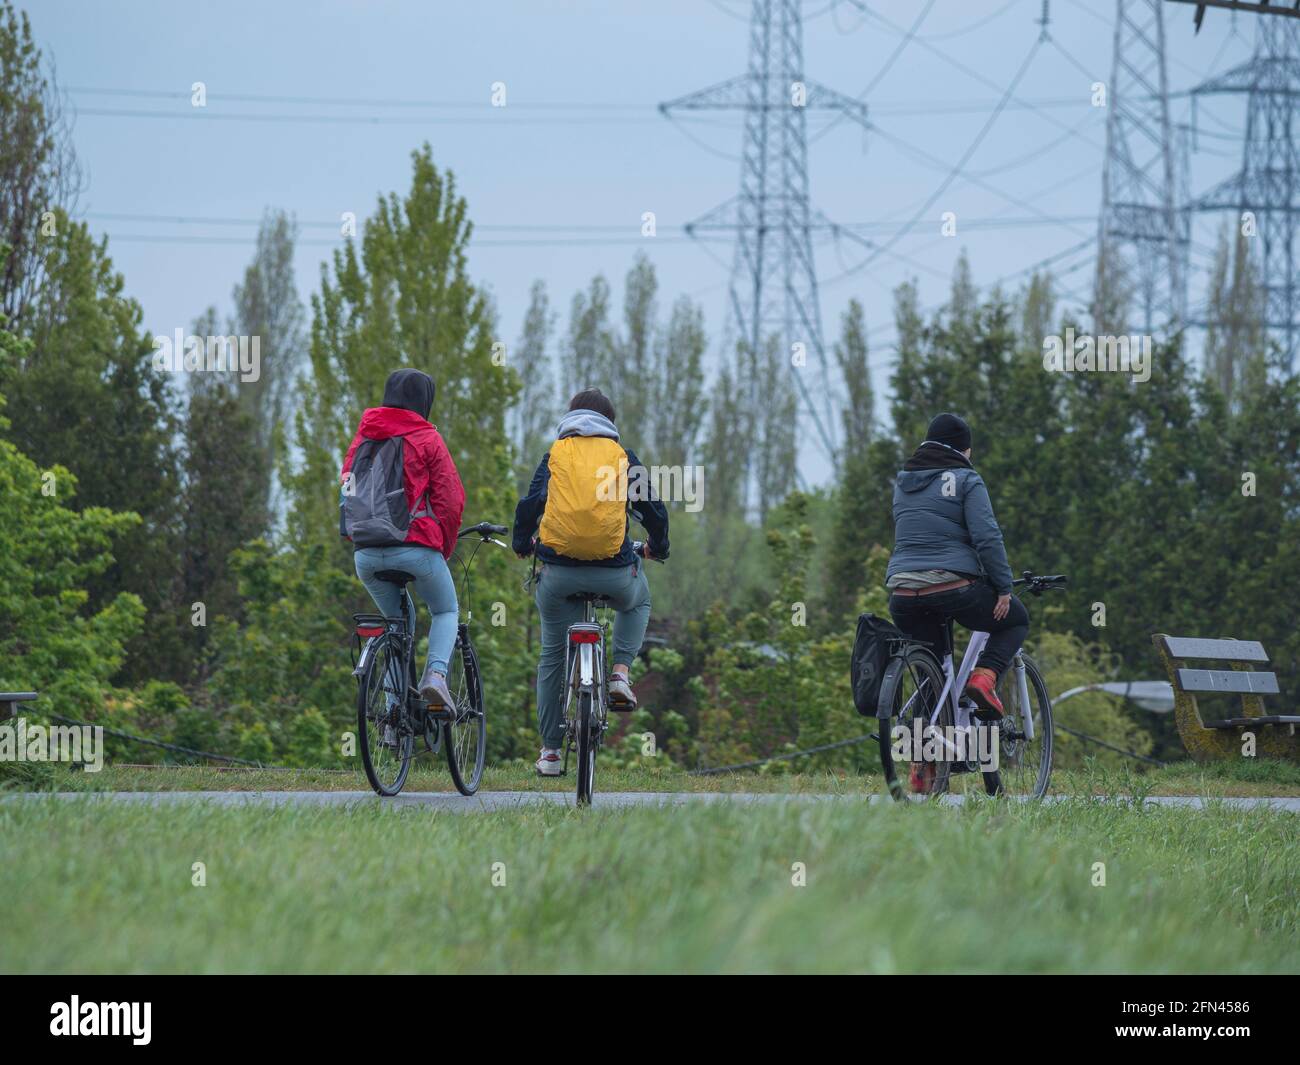 Trois amis sur des vélos en équipement de pluie sur un pluvieux jour Banque D'Images